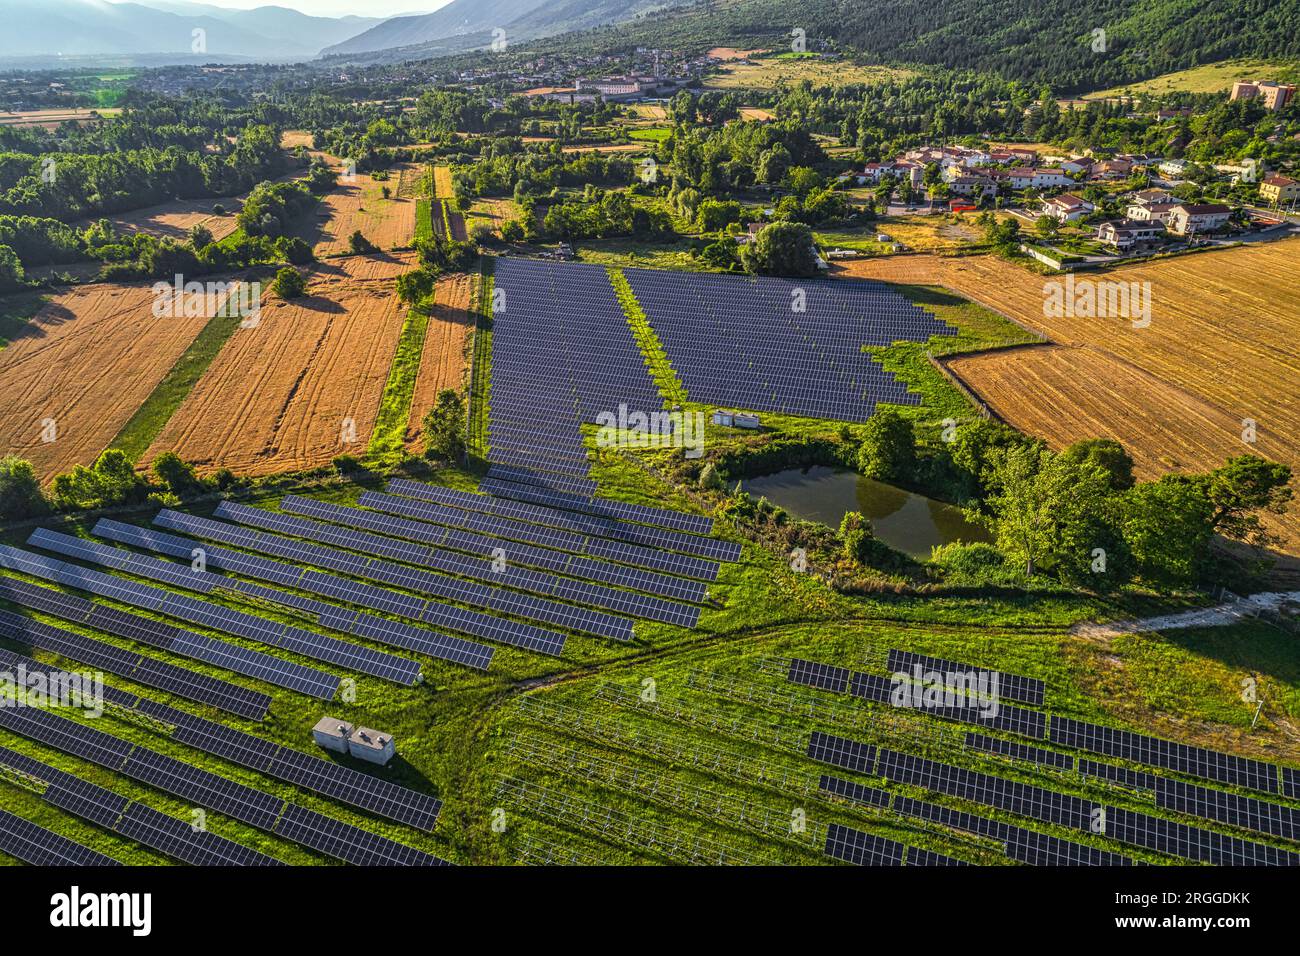 Campo de paneles solares para la producción de energía renovable y no contaminante. Abruzzo, Italia, Europa Foto de stock